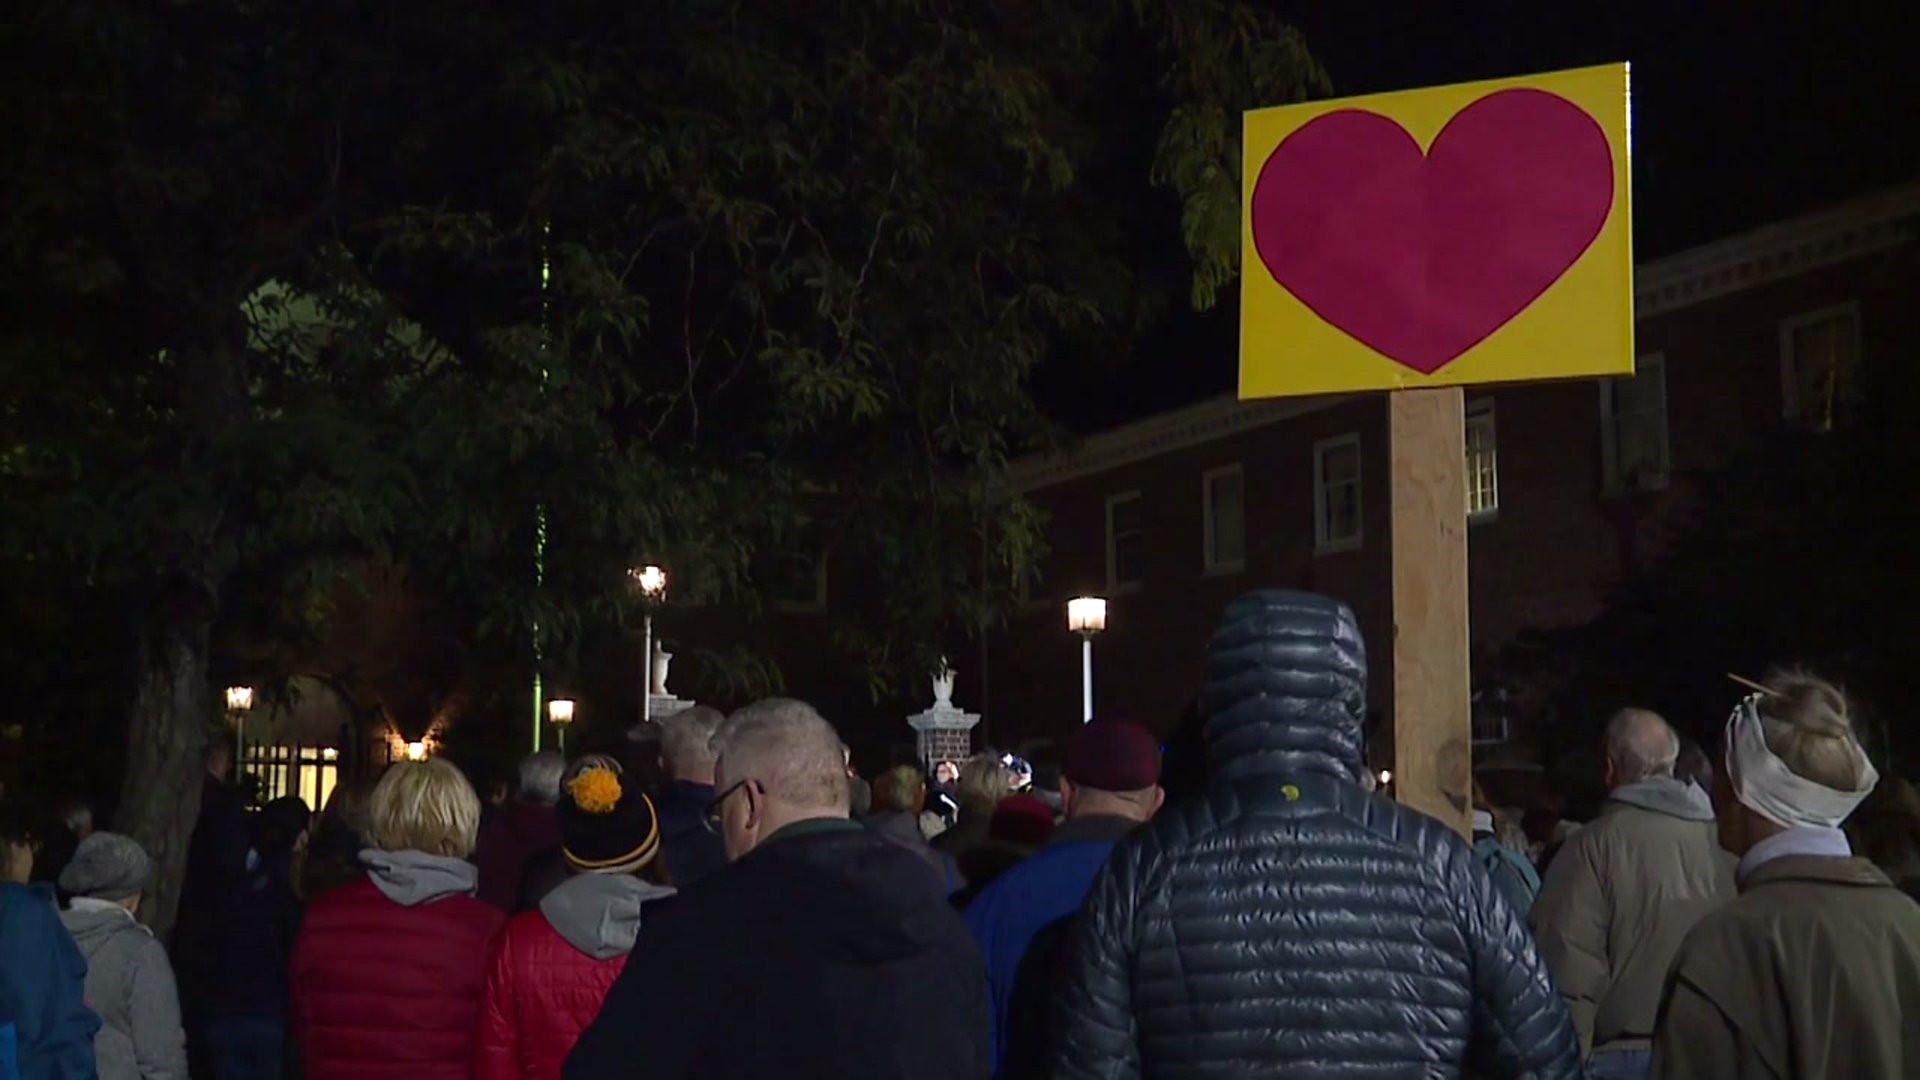 Vigil against Hate in York